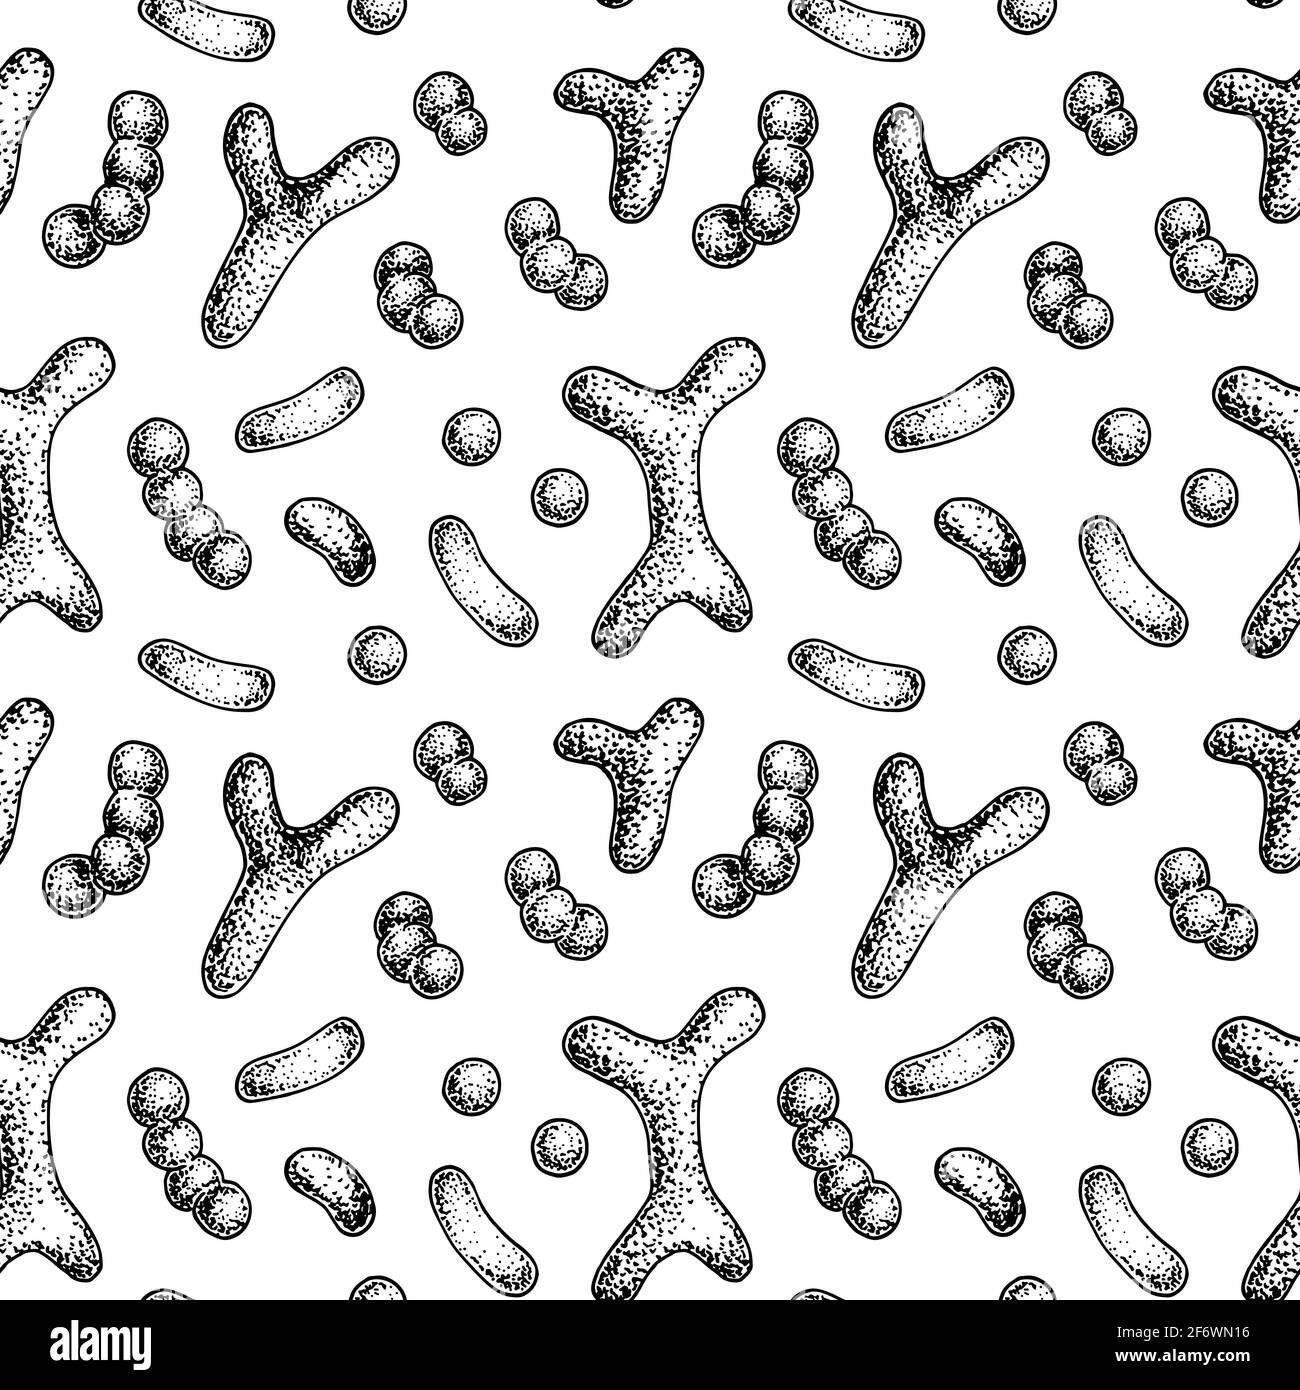 Nahtloses Bakterium-Muster in realistischem Skizzenstil. Handgezeichneter medizinischer Hintergrund. Vektorgrafik Stock Vektor